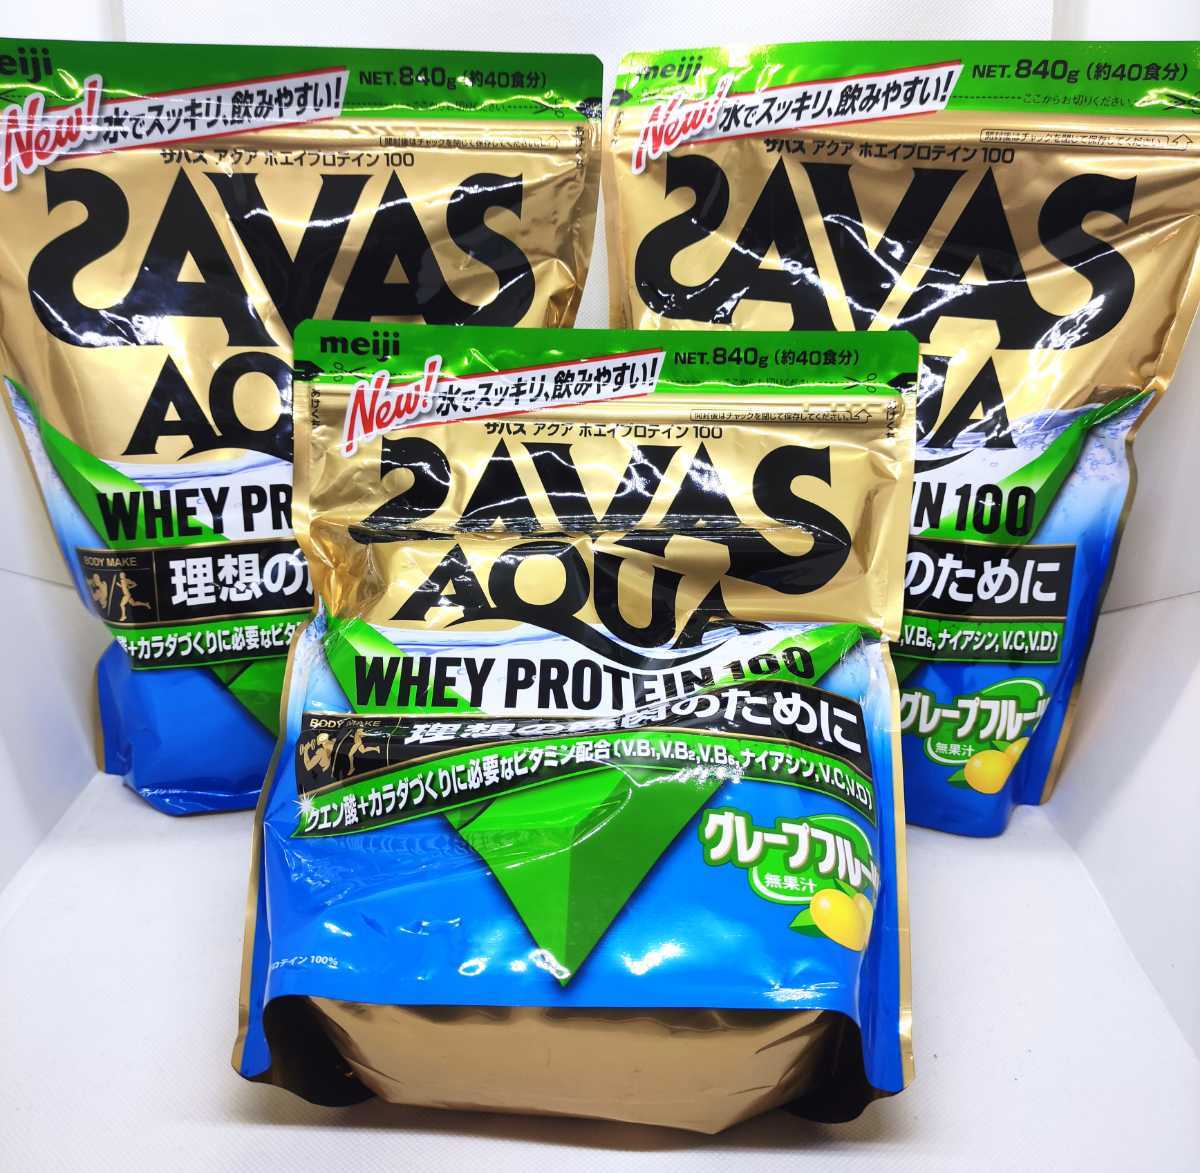 ザバス(SAVAS) アクアホエイプロテイン100+クエン酸 グレープフルーツ風味【40食分】 840g3個セット